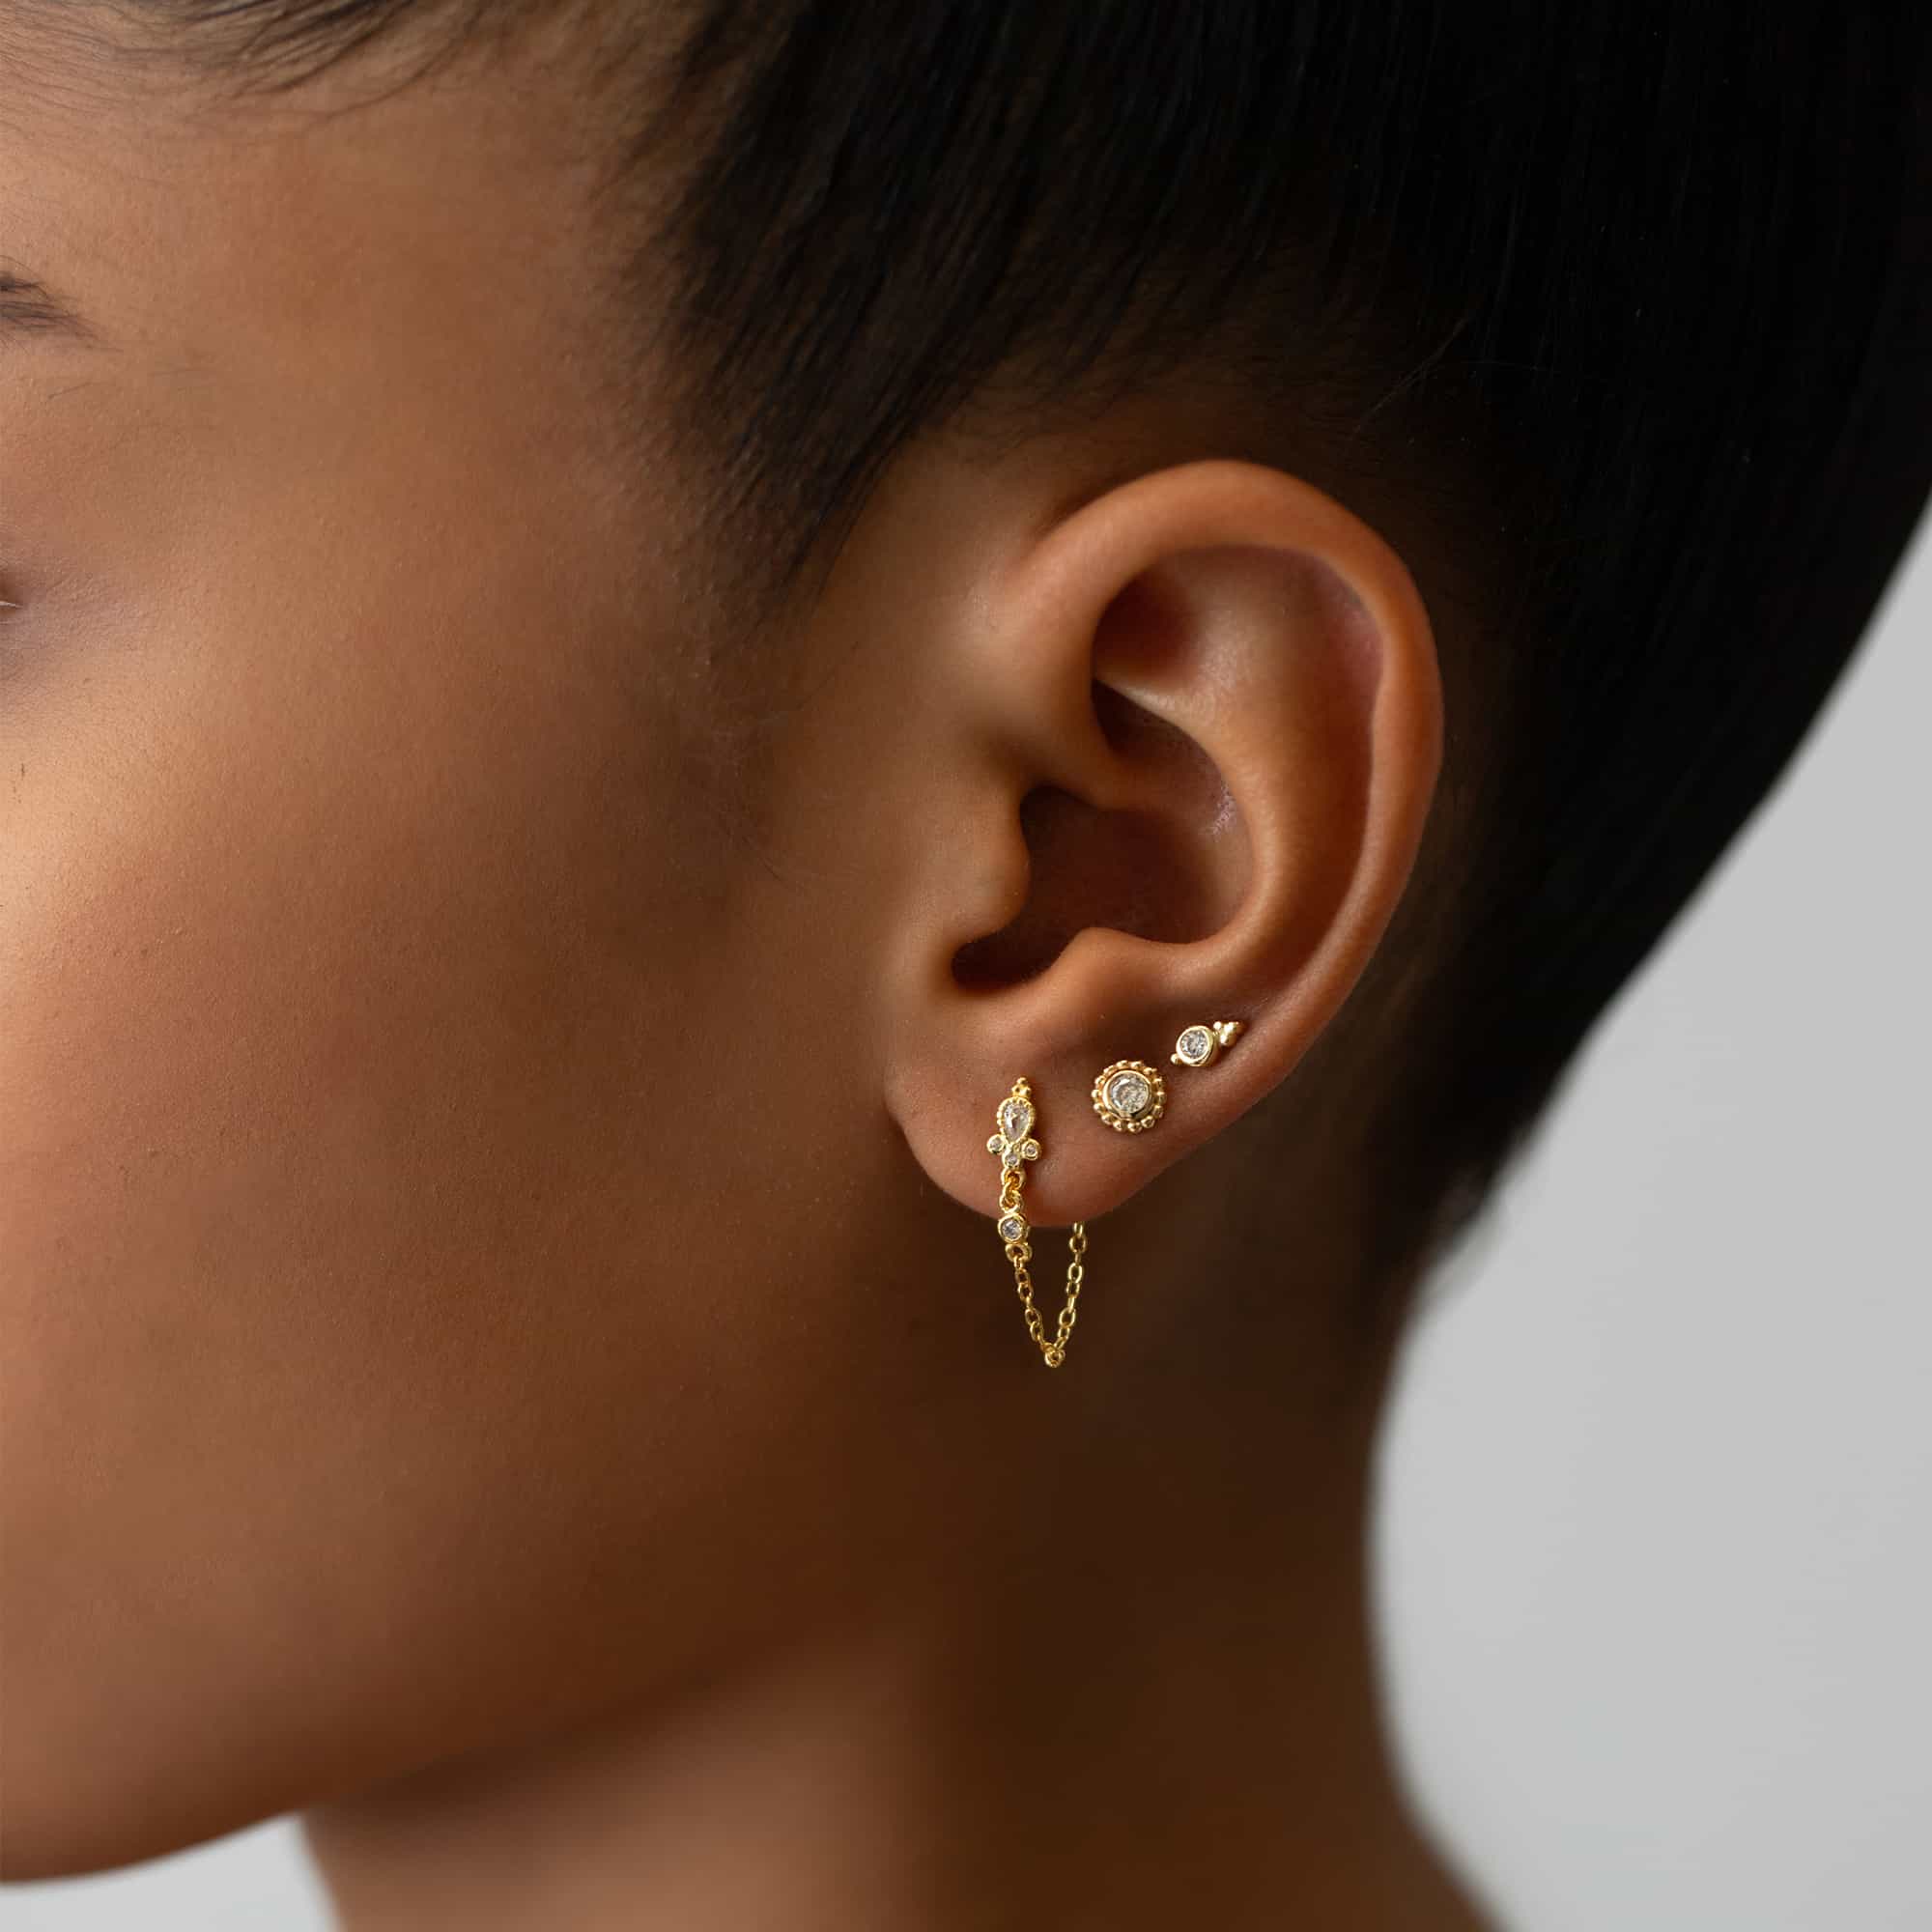 Stainless Steel Rose Gold Chain Tassel Earring Pair For Women – ZIVOM